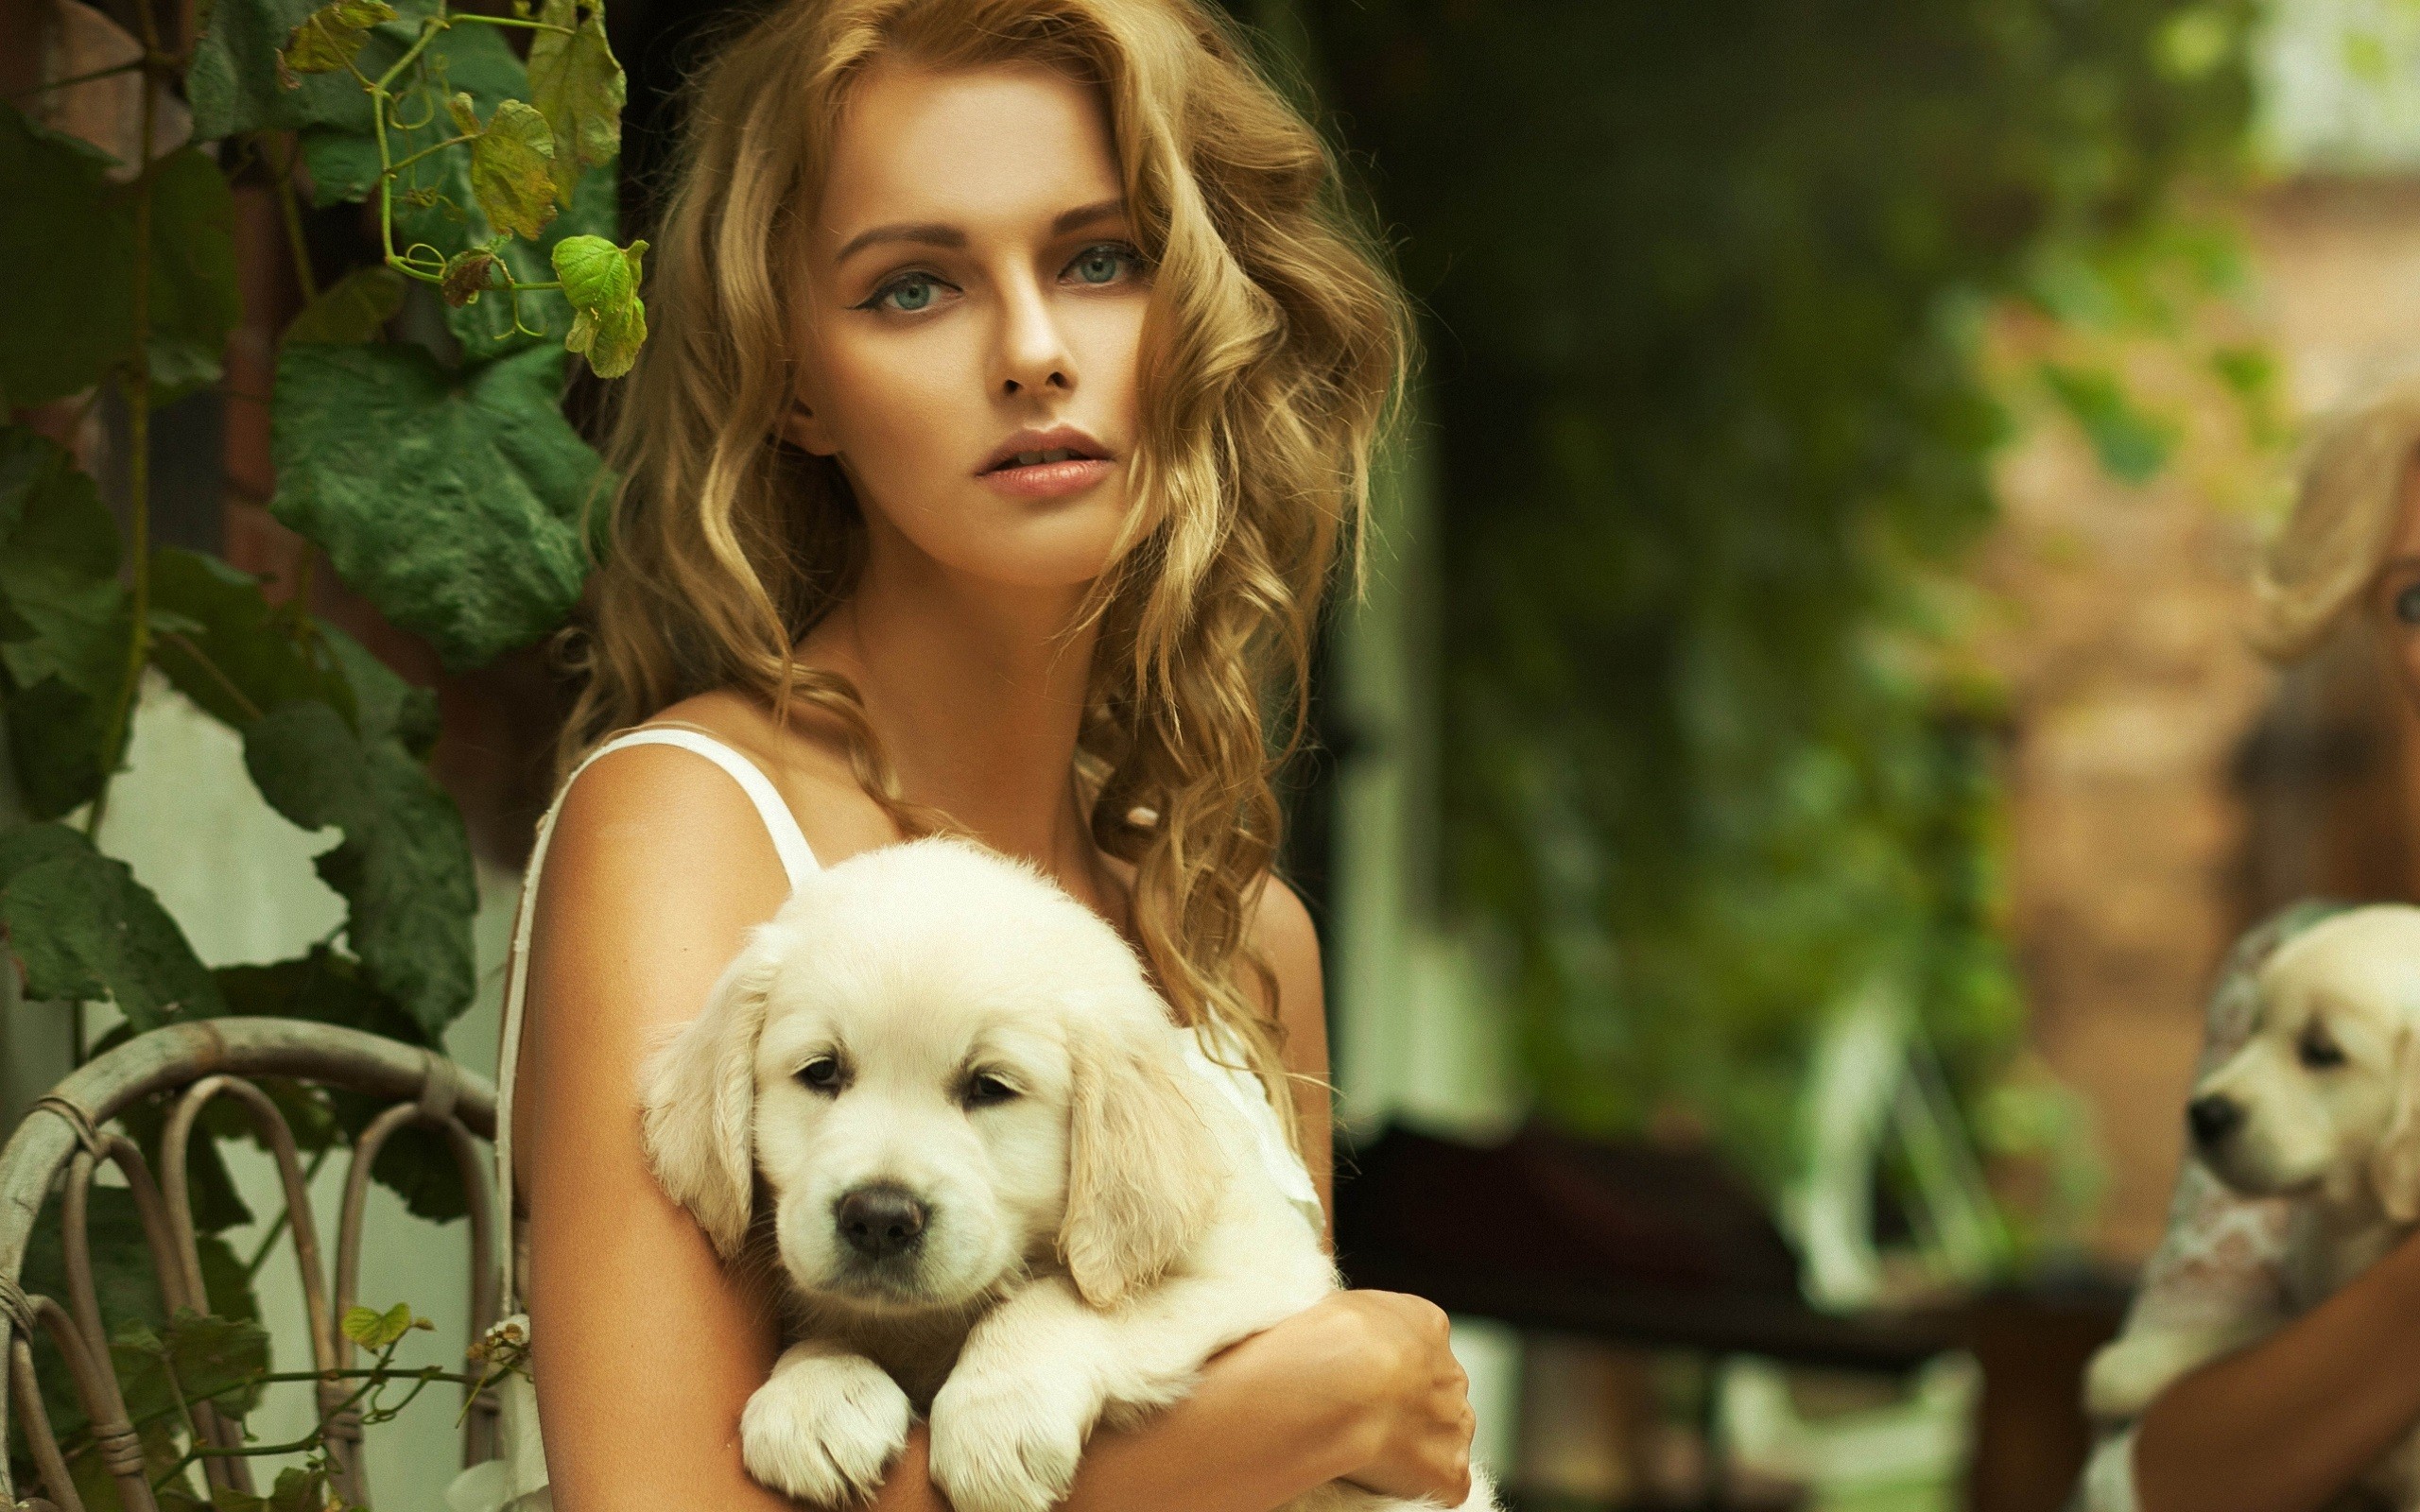 Beautiful Blonde Wallpaper Face Girl Puppy Tenderness